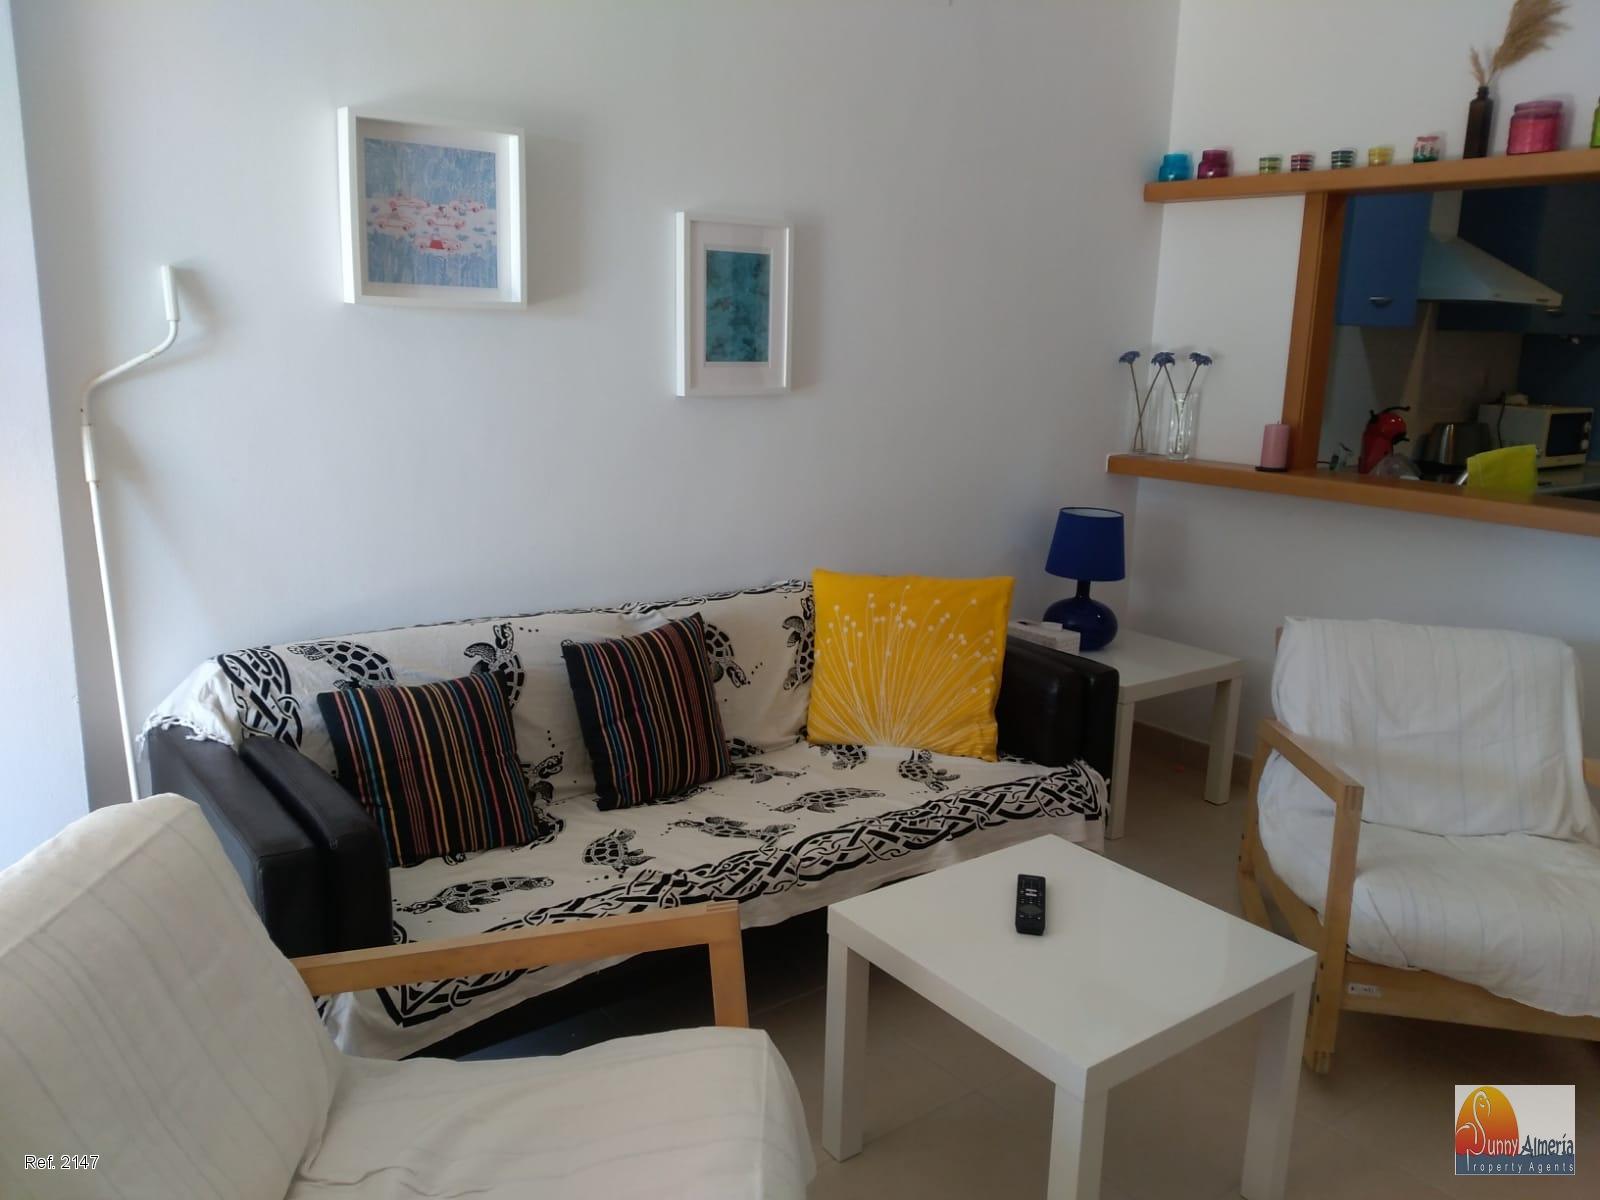 Luxury Apartment for rent in Avenida de Cerrillos 86 (Roquetas de Mar), 975 €/month